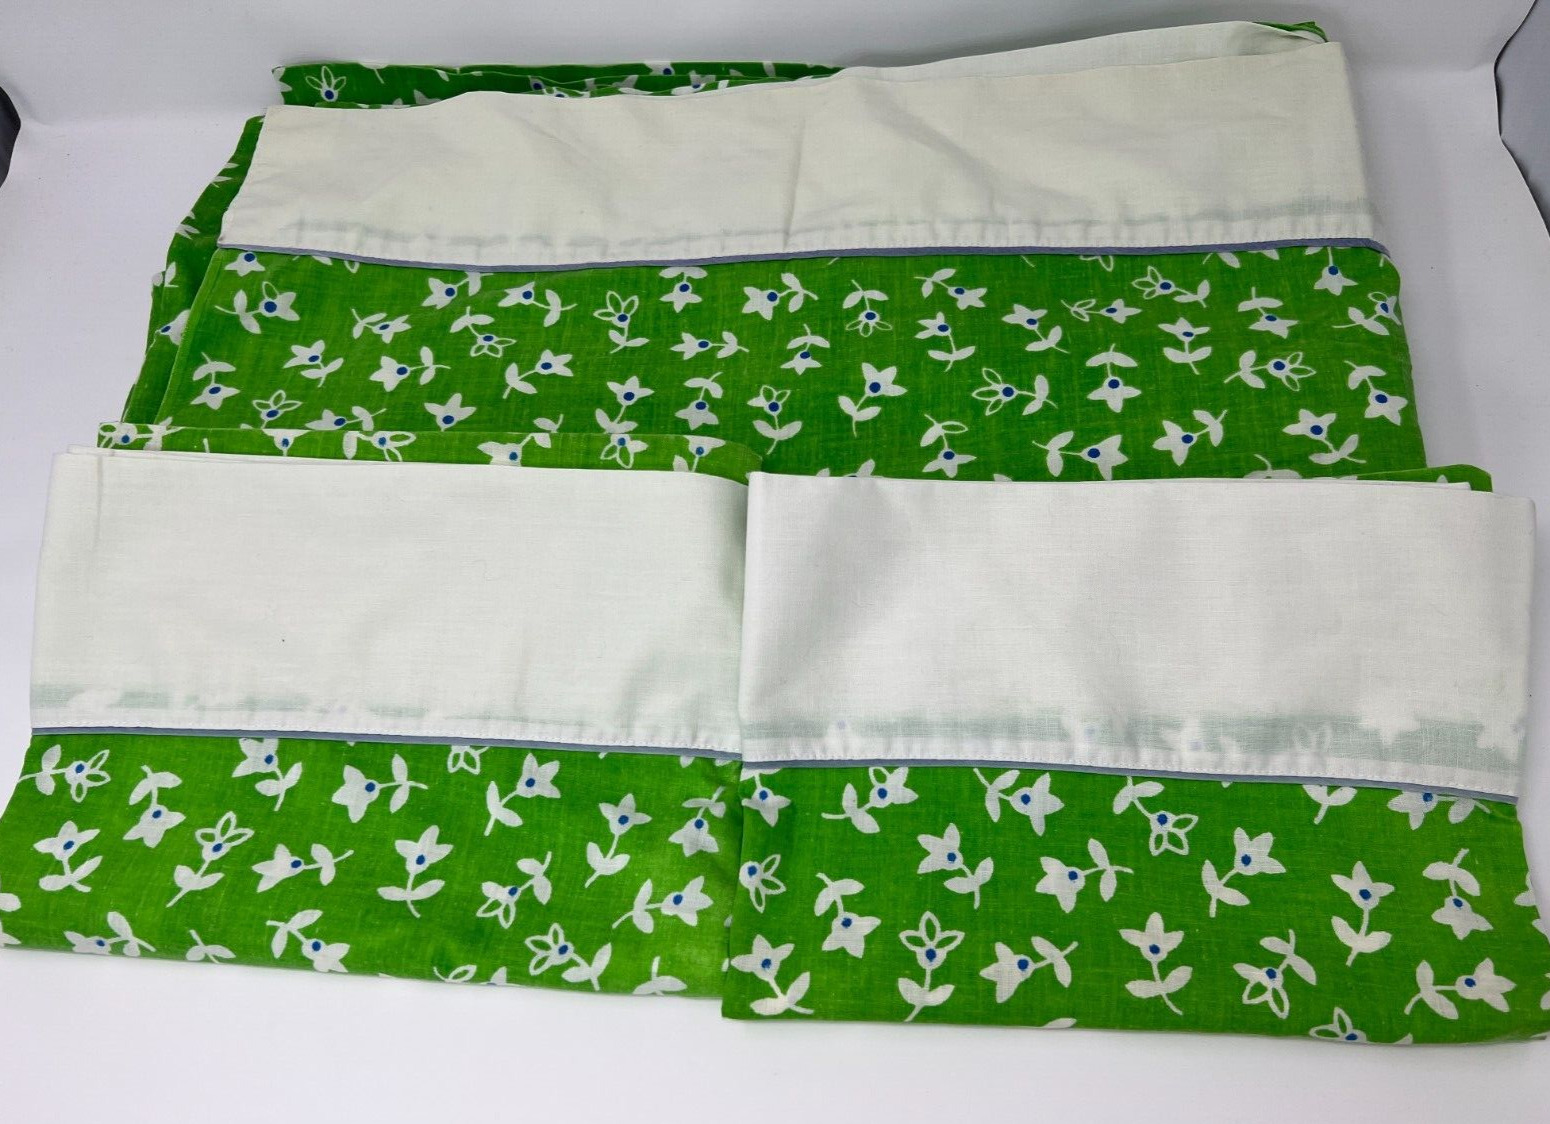 VTG Martex Presslin 303 Full Flat Sheet & 2 Standard Pillowcases Lime Floral